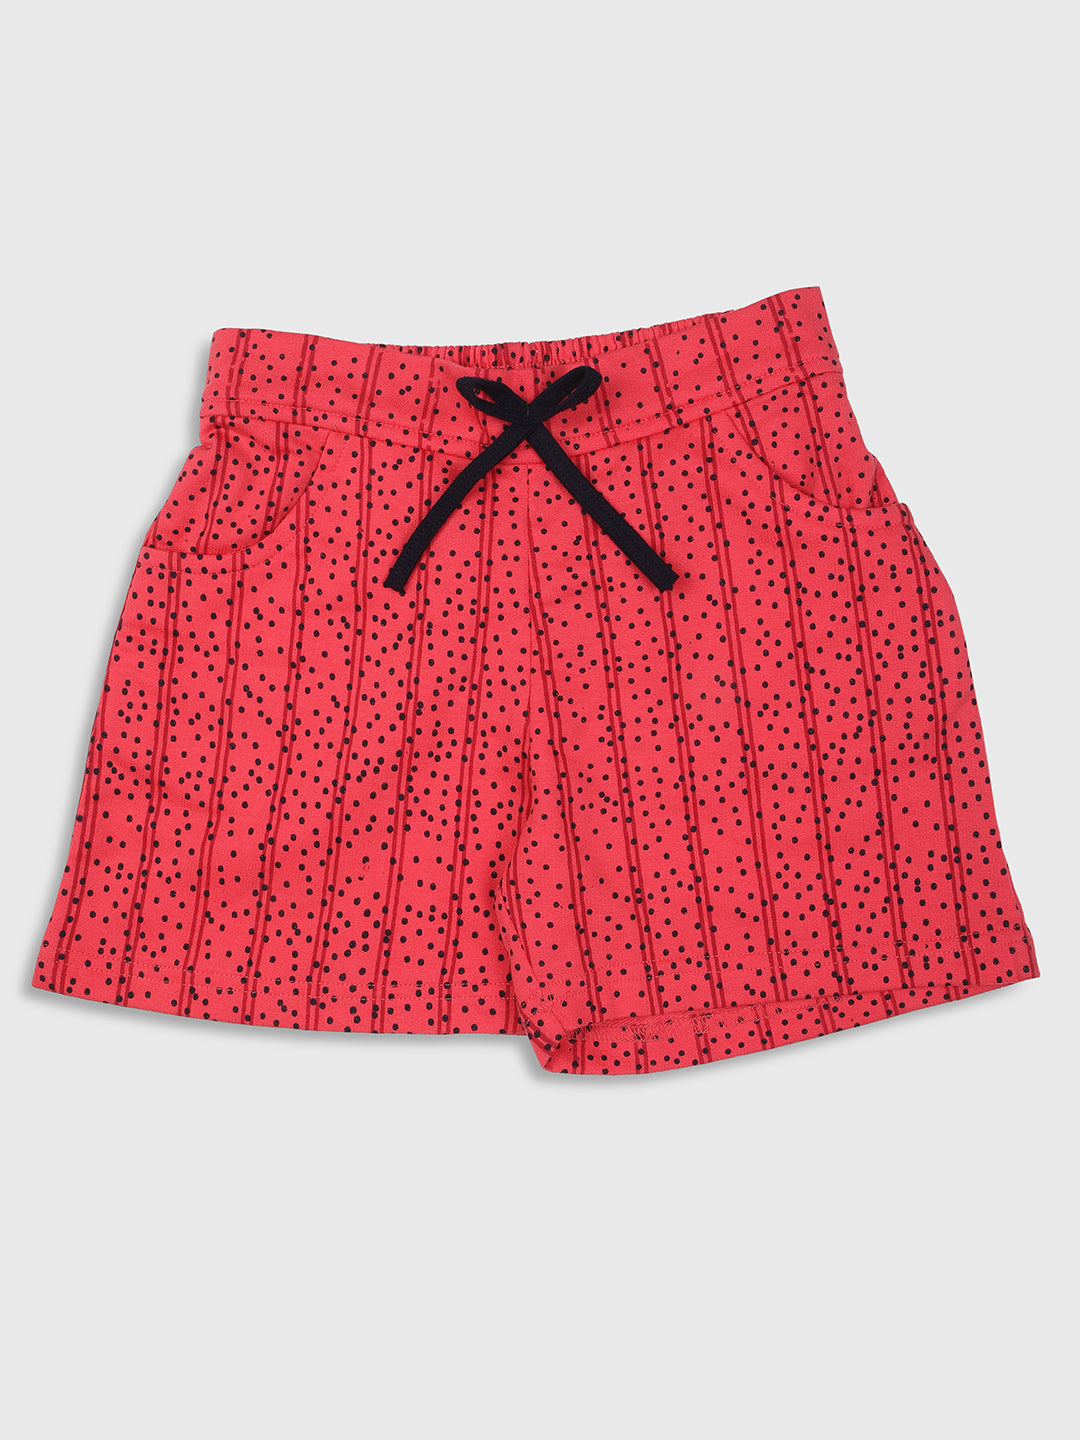 Nins Moda Girls Dot Printed Shorts-Coral